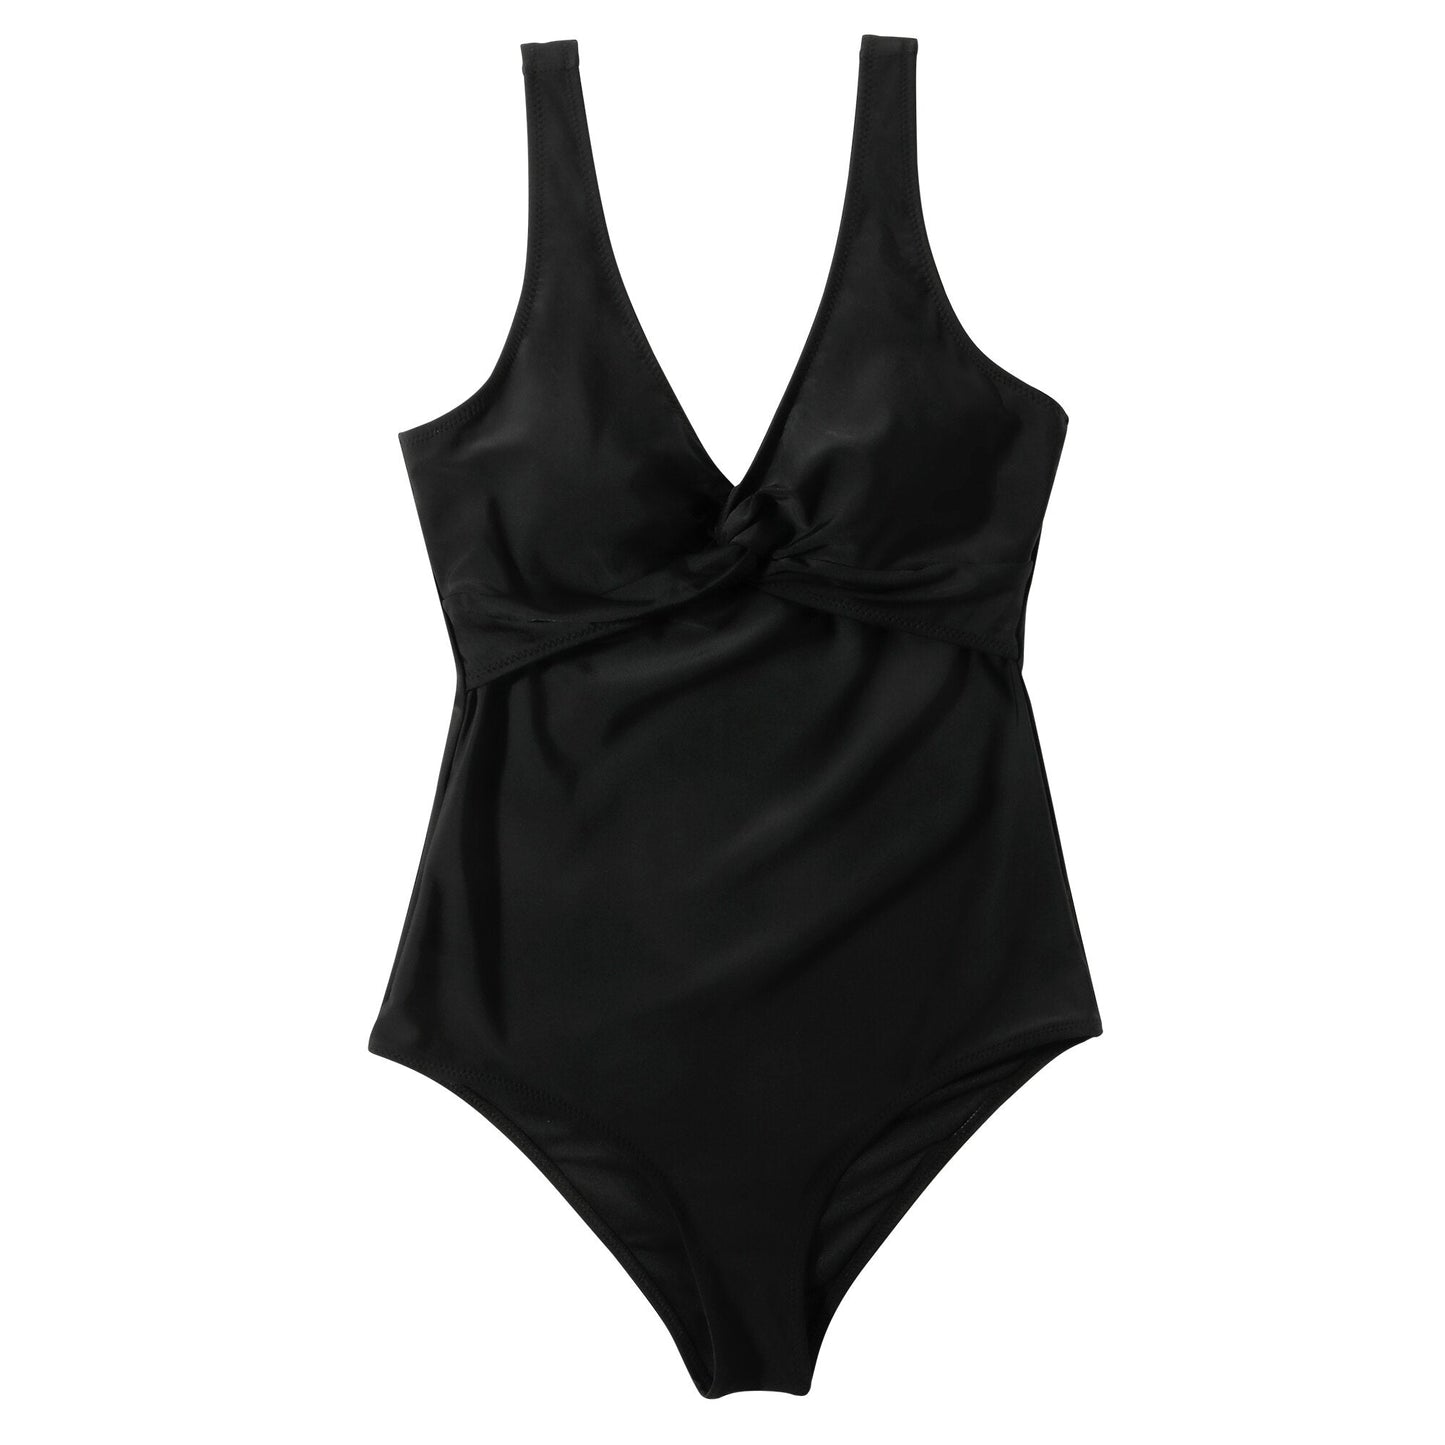 2021 Badebekleidung Einteiliger Badeanzug Leopard Badebekleidung Frauen Schwimmen Bikini Push Up Monokini Sexy Einteiliger Badeanzug mit V-Ausschnitt - tif-shop24.de